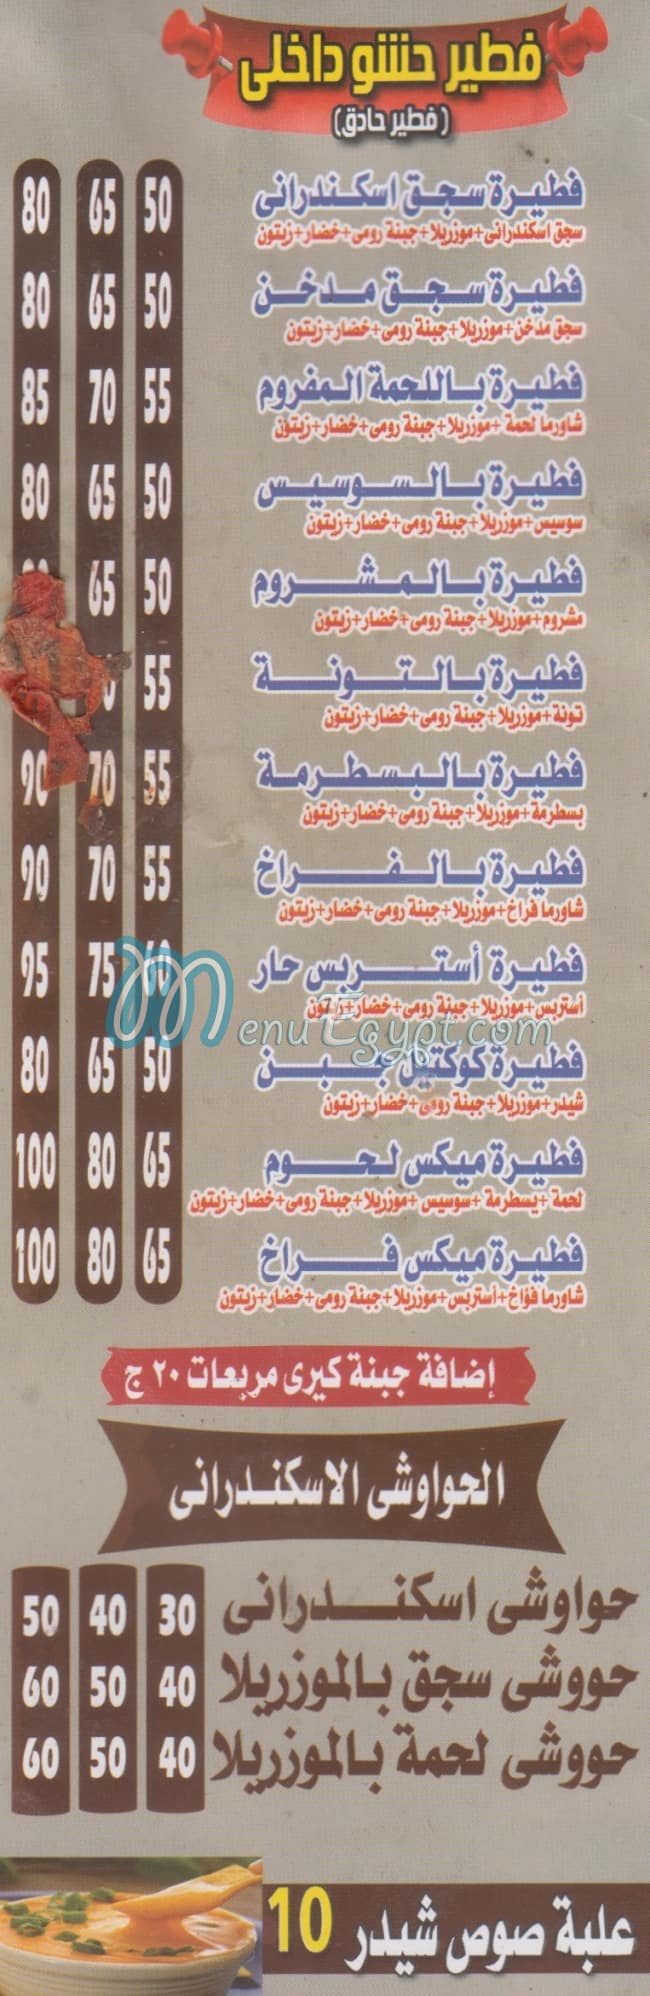 Awlad EL SHEKH menu Egypt 1